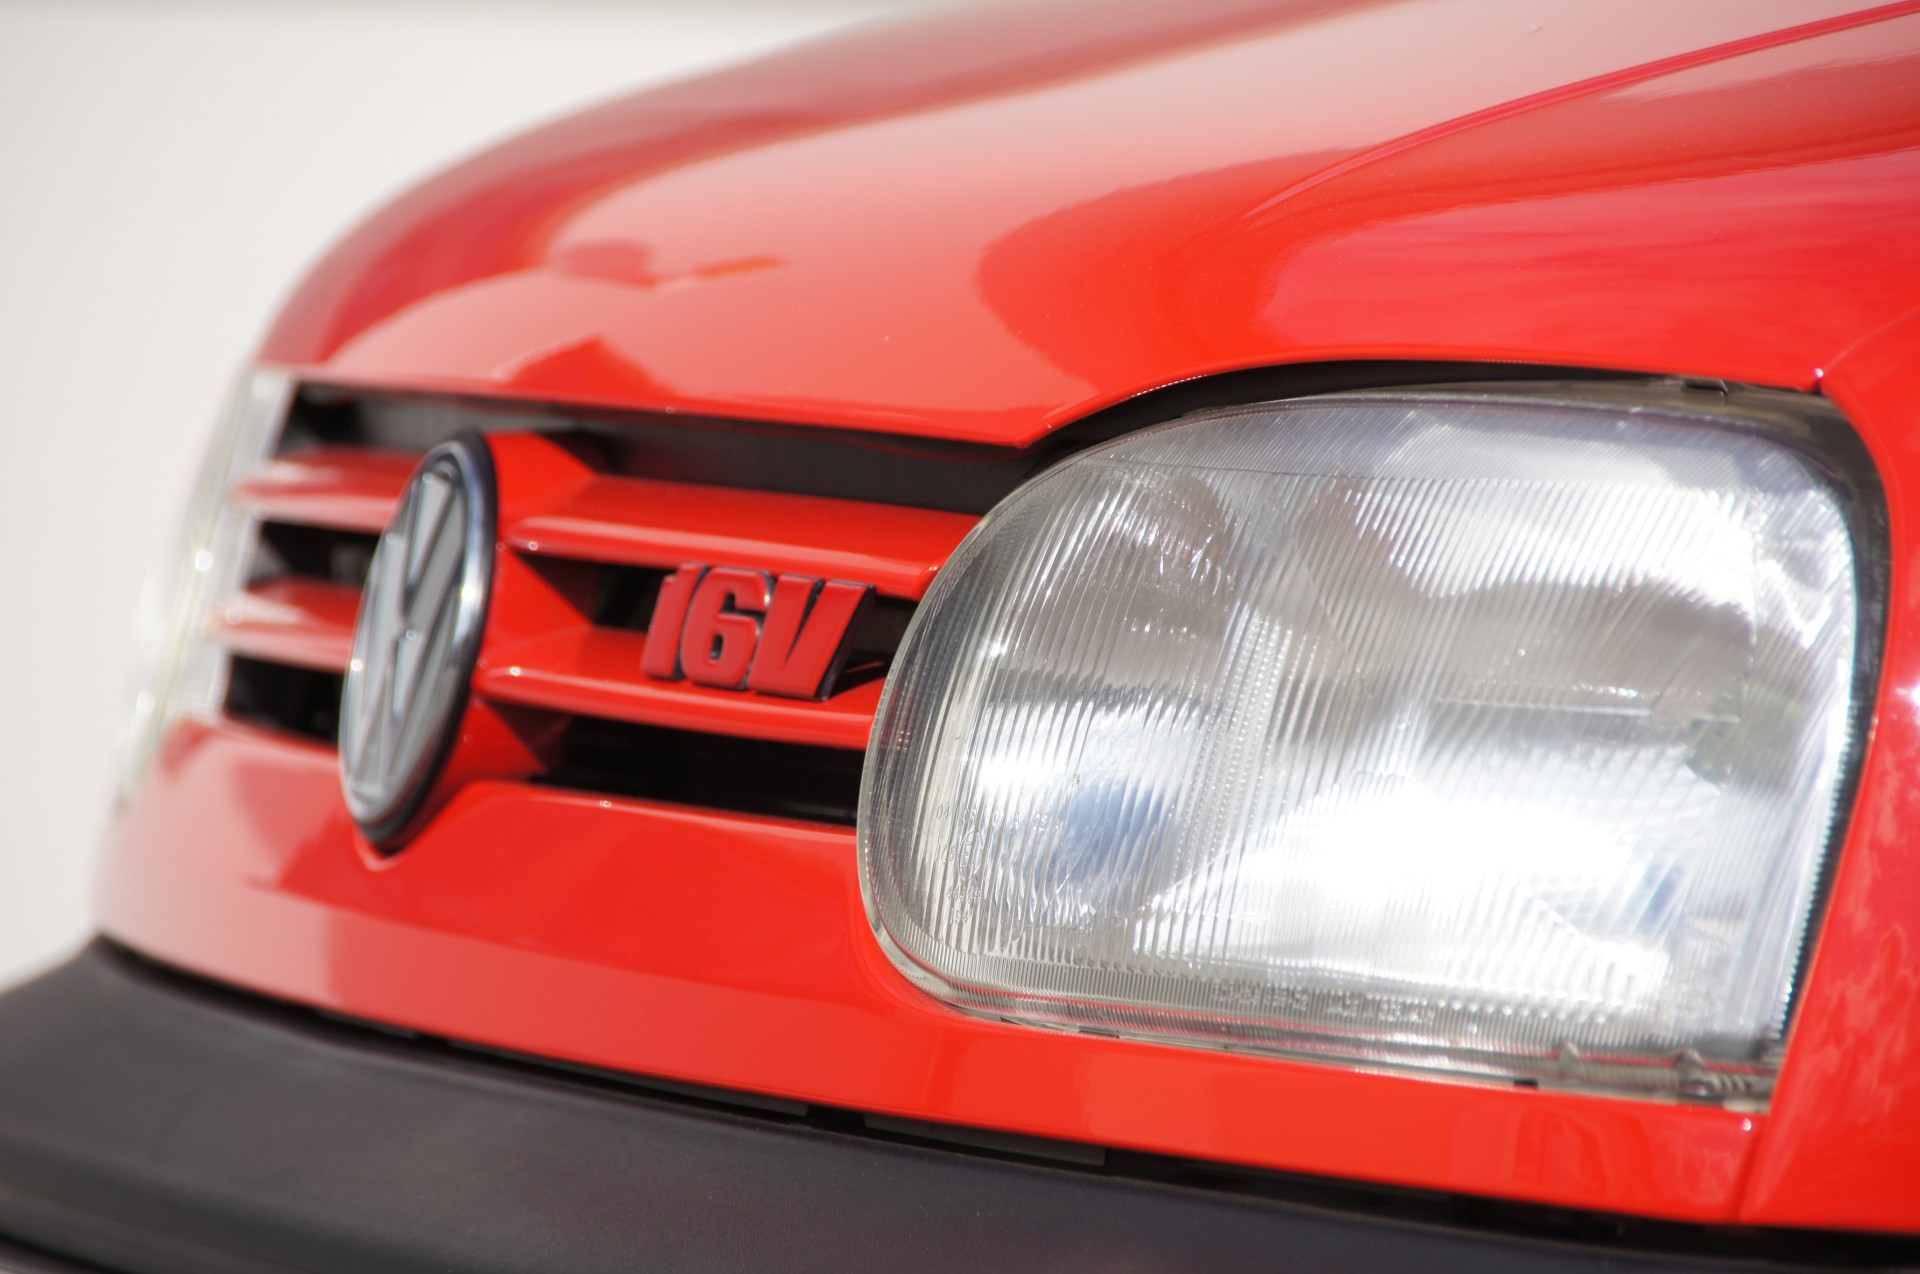 Auto VW Golf 3 GTI 20 Edition -  - Deine Automeile im Netz